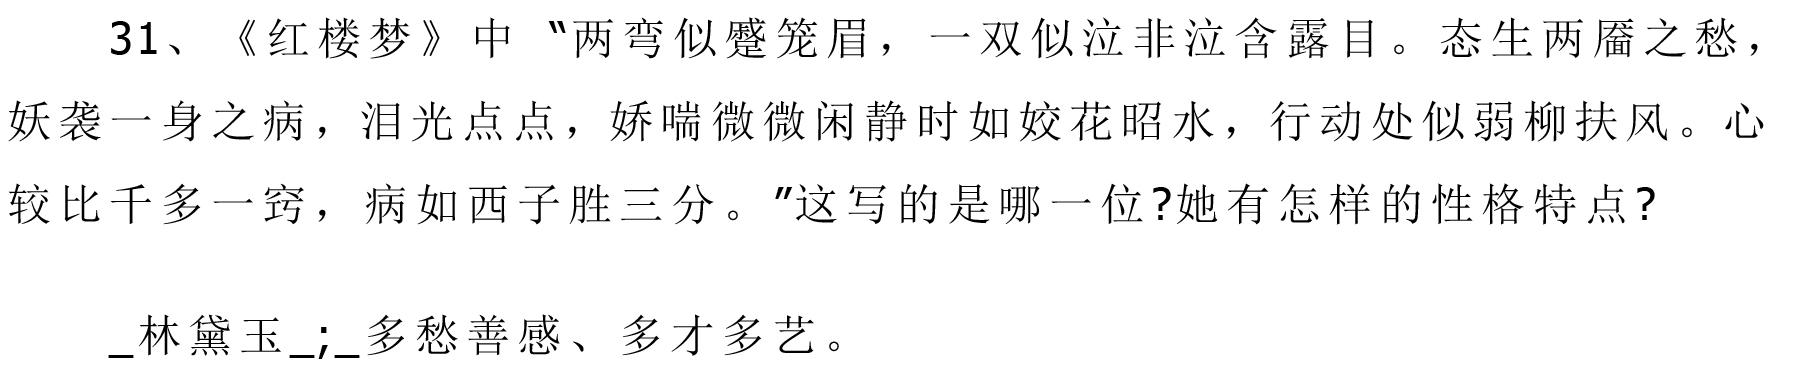 初中语文超详细基础知识总结，期末中考复习必备，替孩子收藏了！